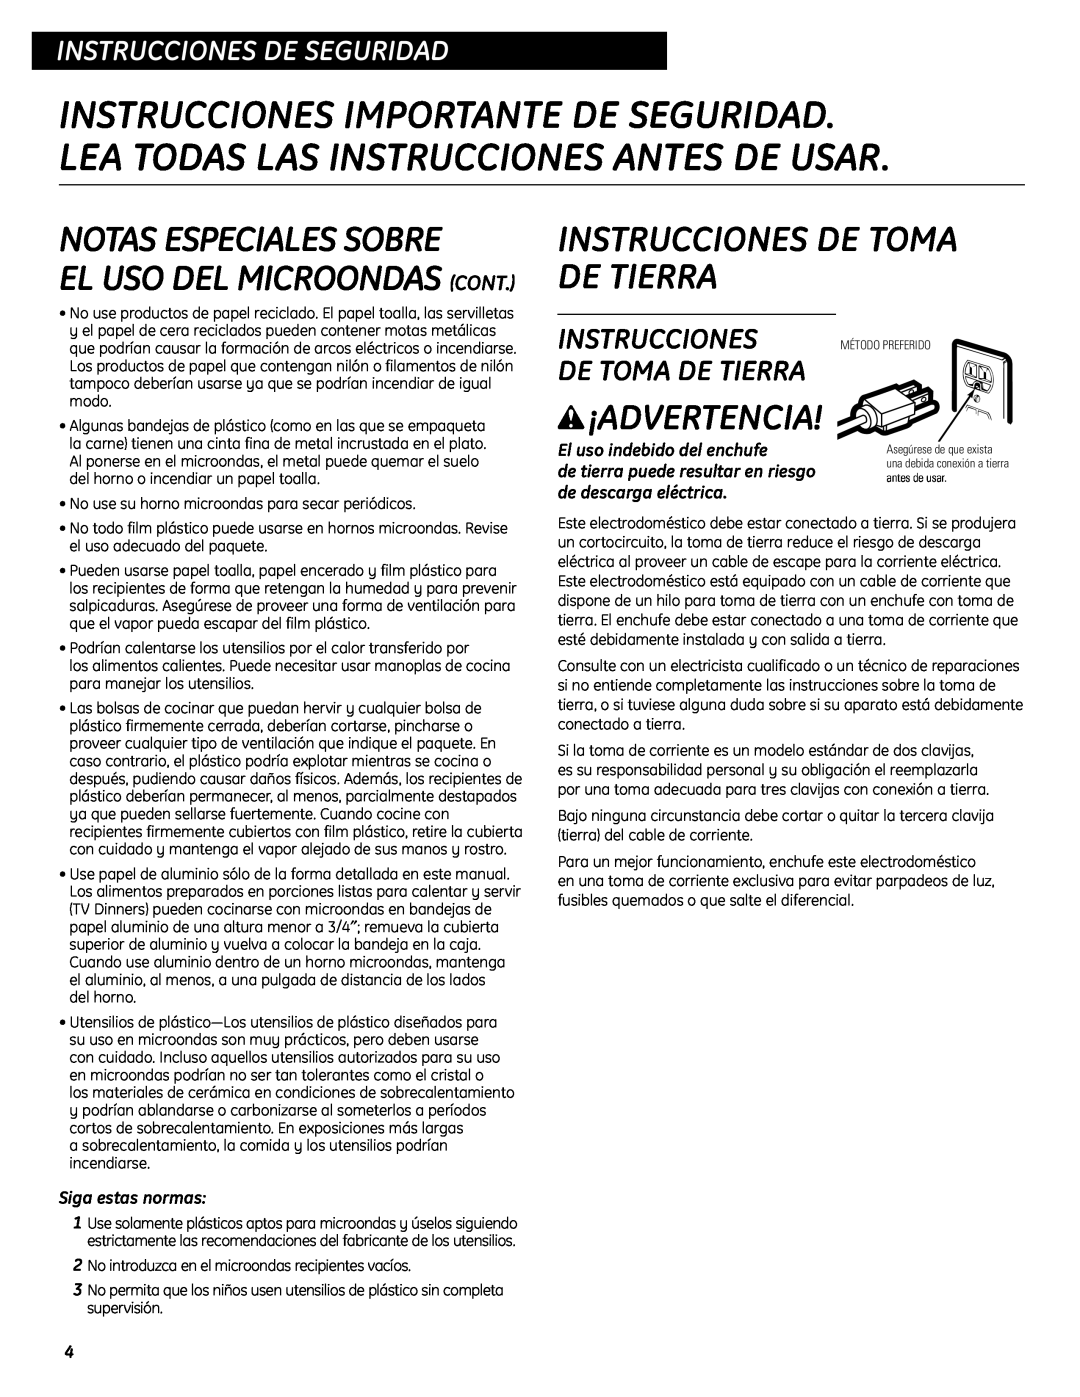 GE WES0930 Notas Especiales Sobre, Instrucciones De Toma De Tierra, w¡ADVERTENCIA, El Uso Del Microondas Cont 